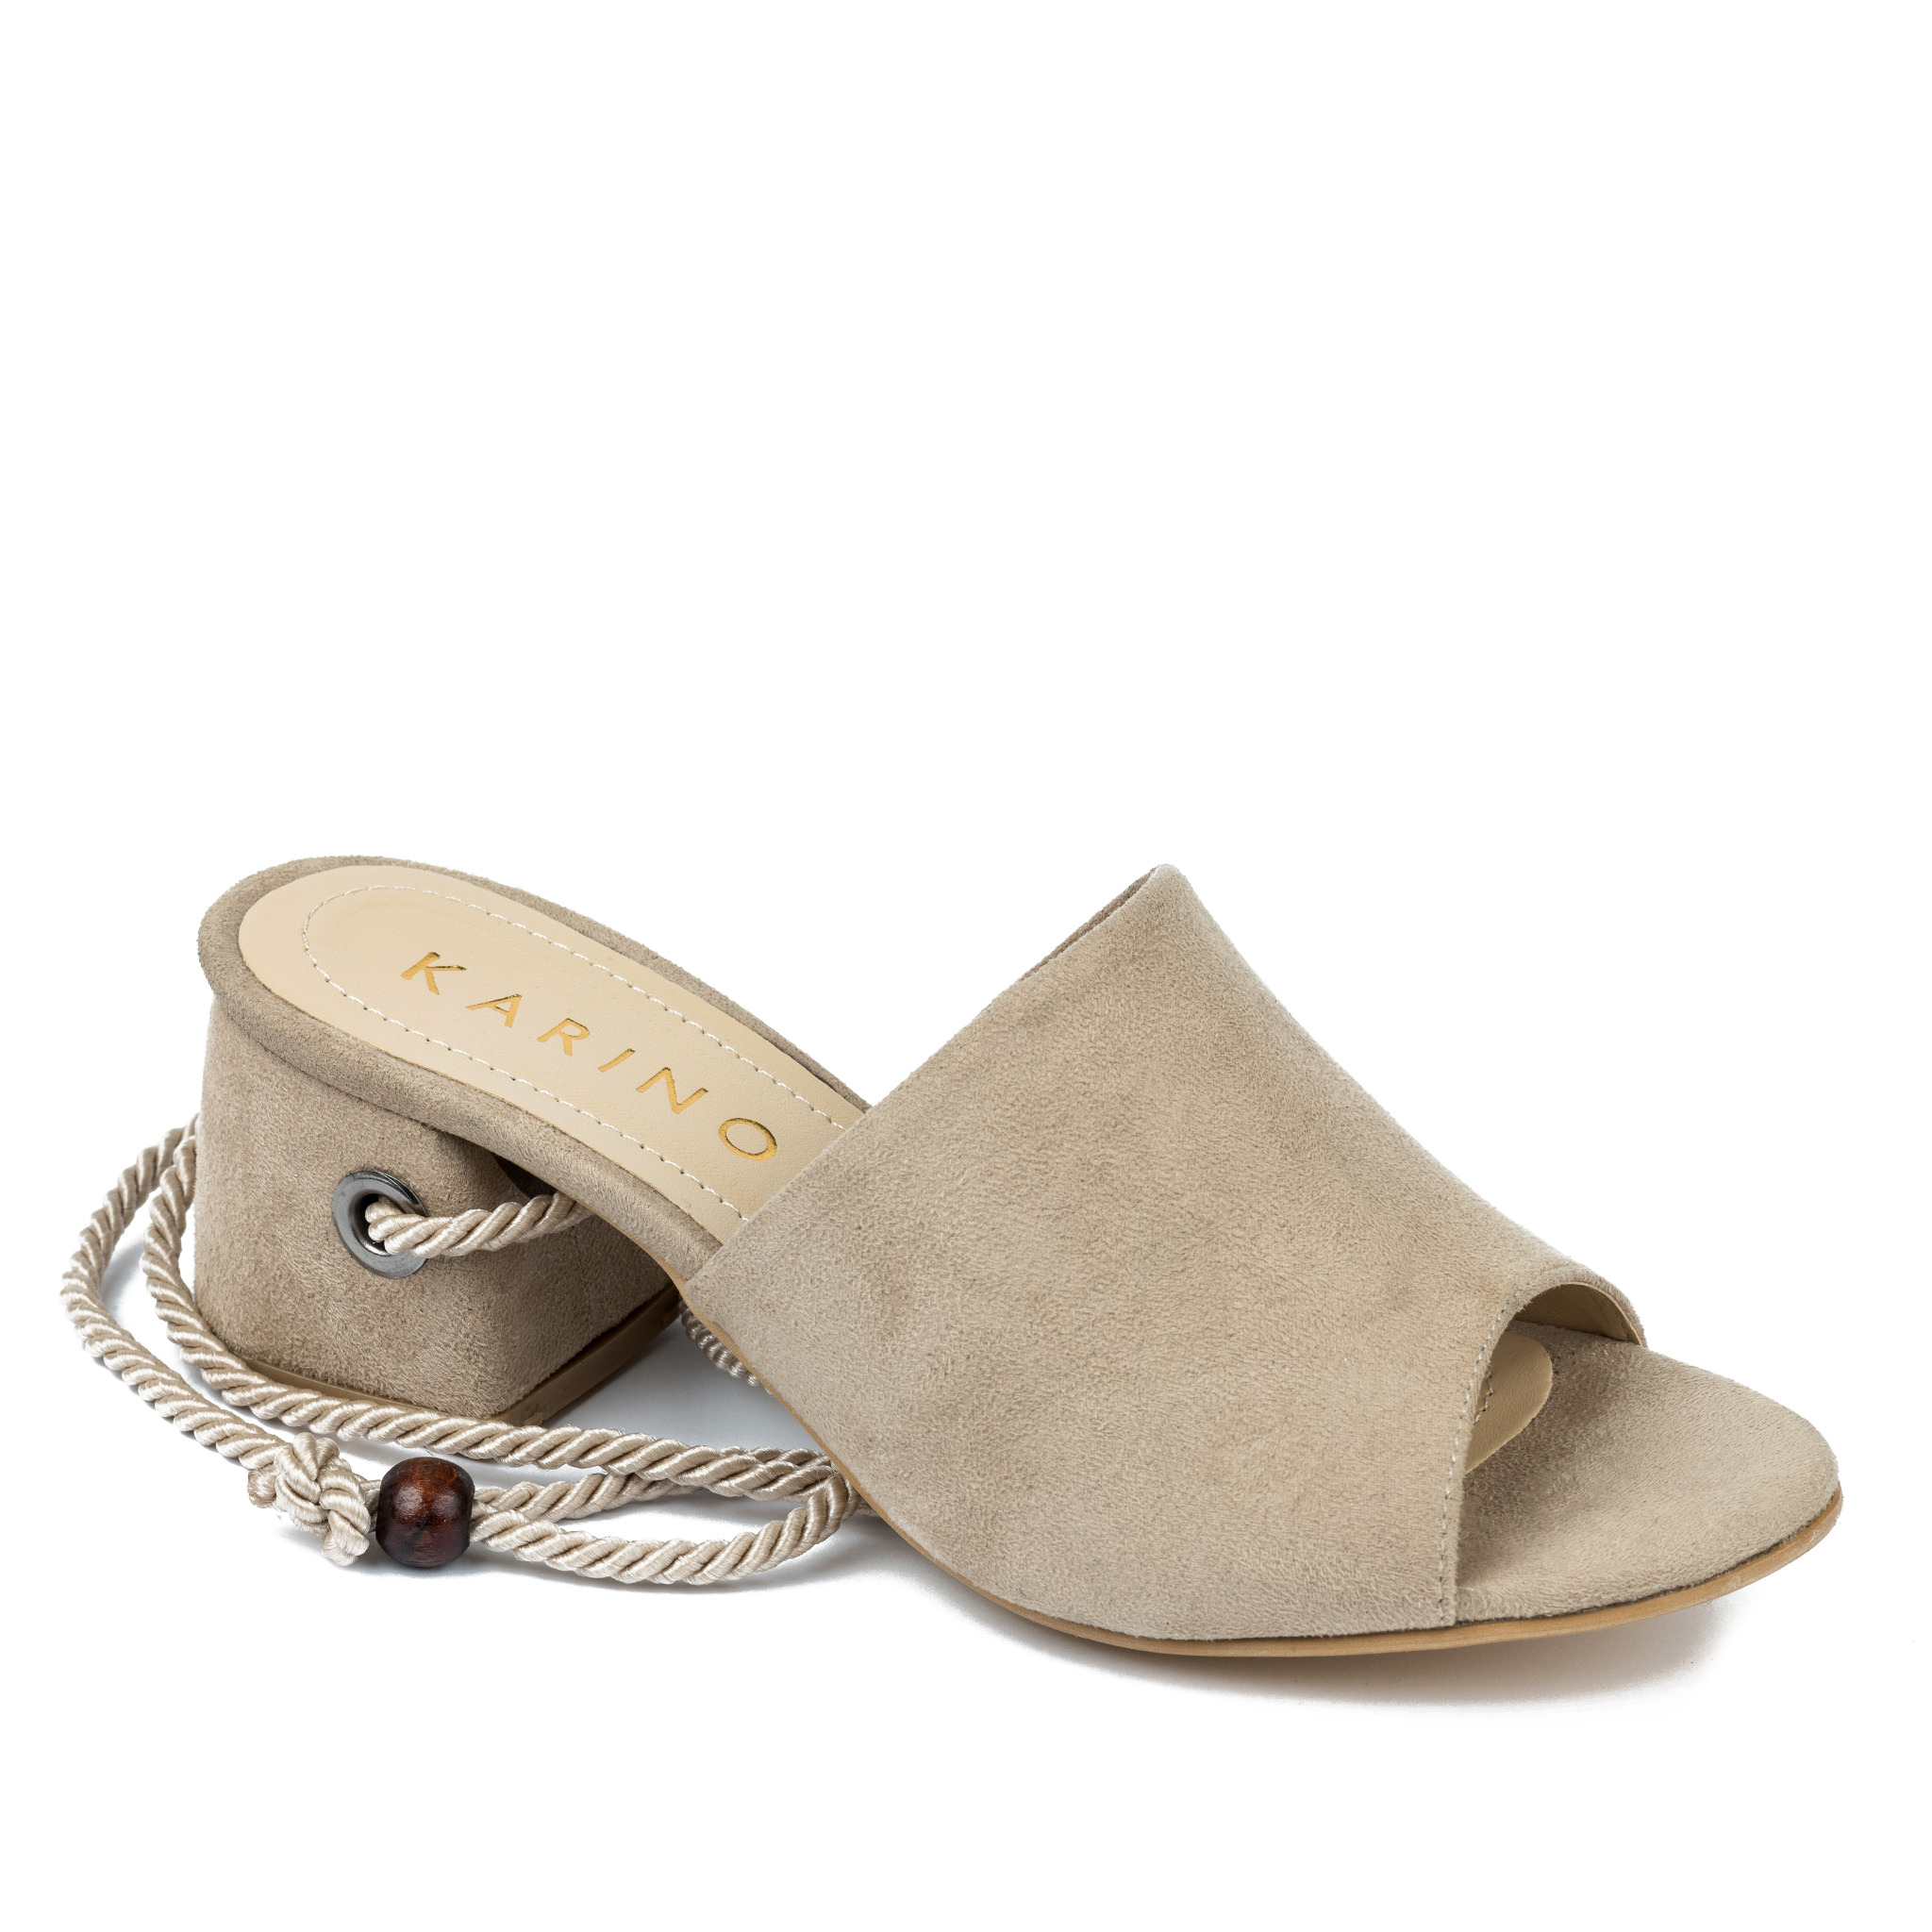 Women sandals A455 - BEIGE